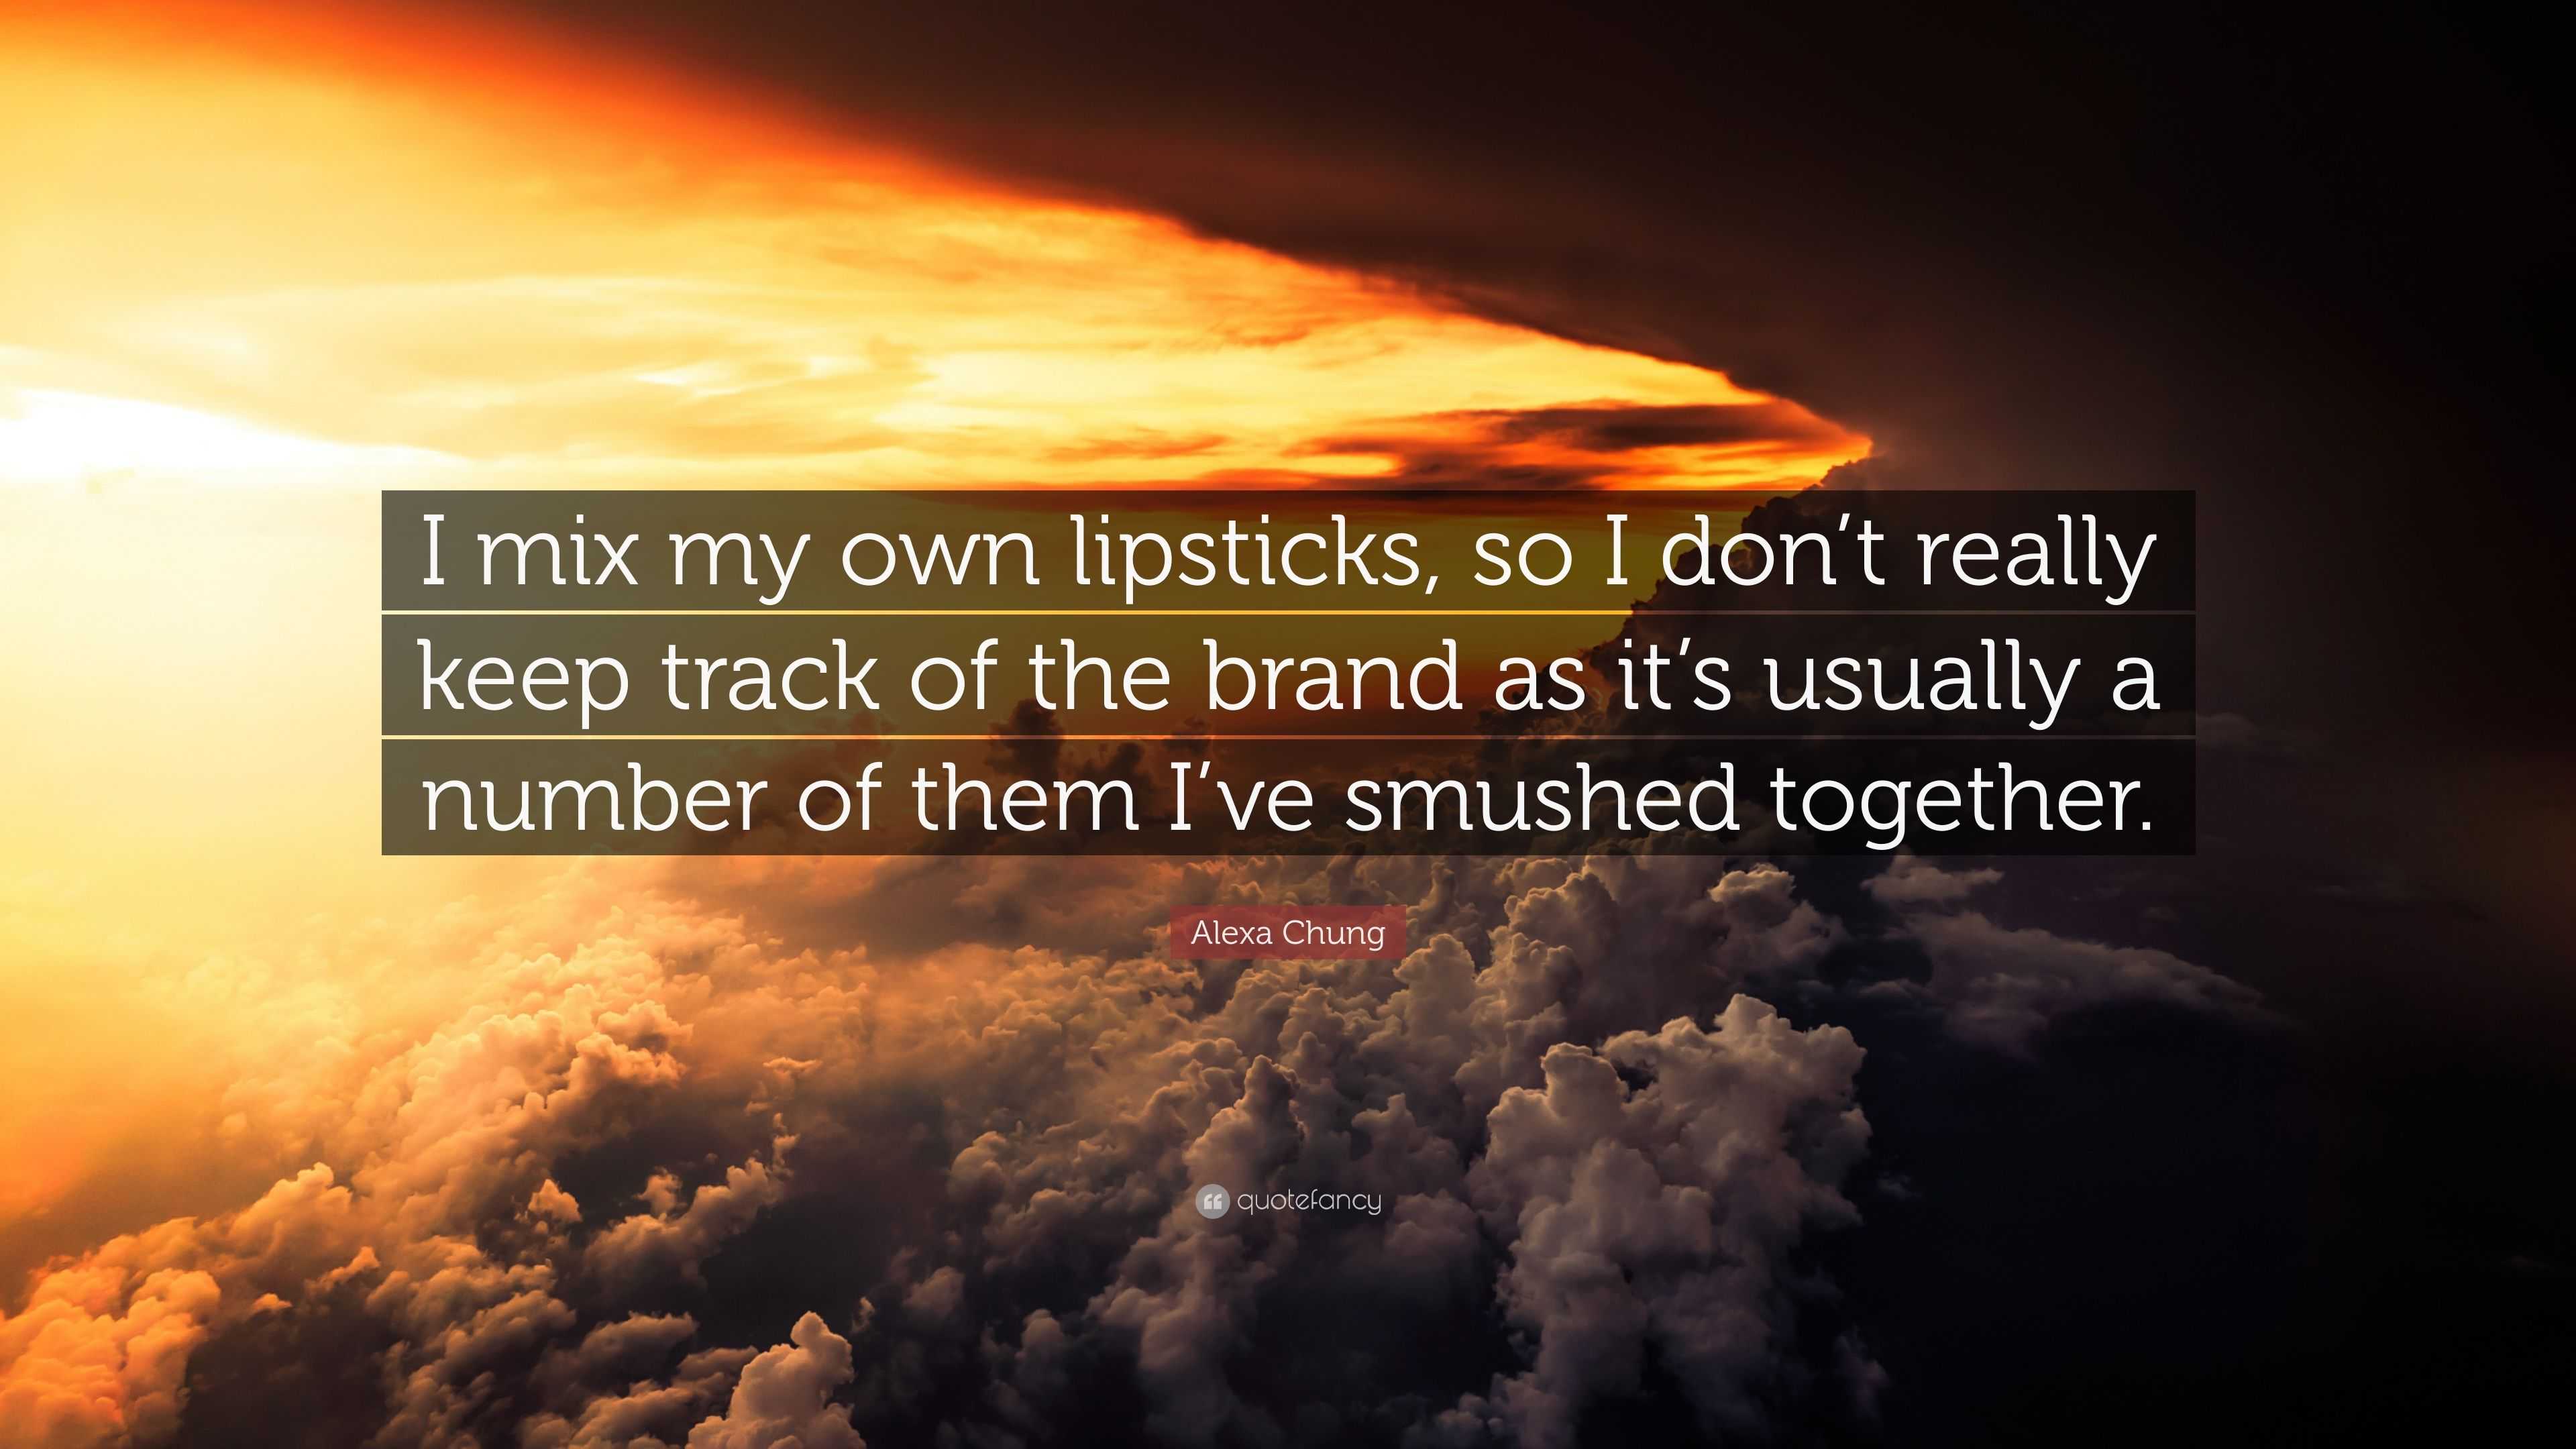 Alexa Chung Quote: “I mix my own lipsticks, so I don’t really keep